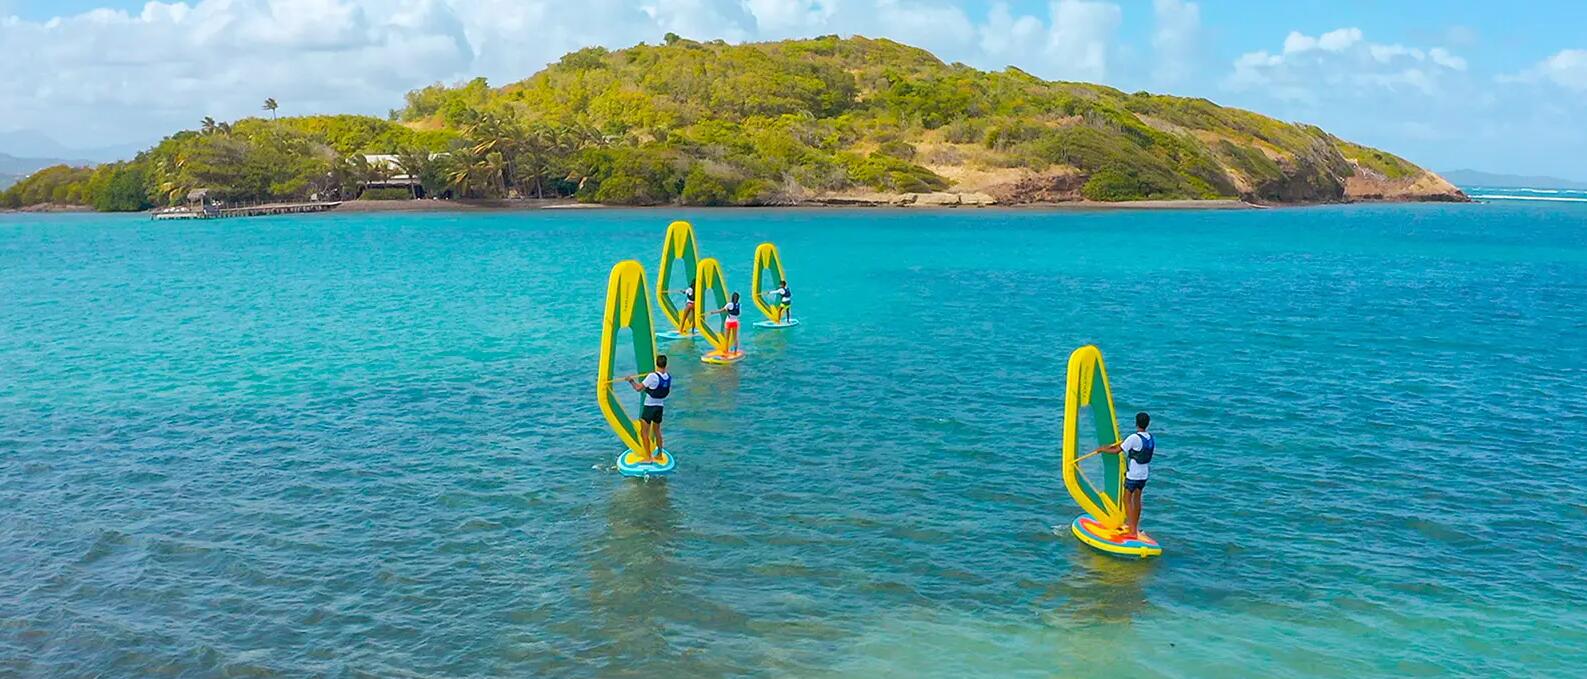 ludzie uprawiający windsurfing na morzu